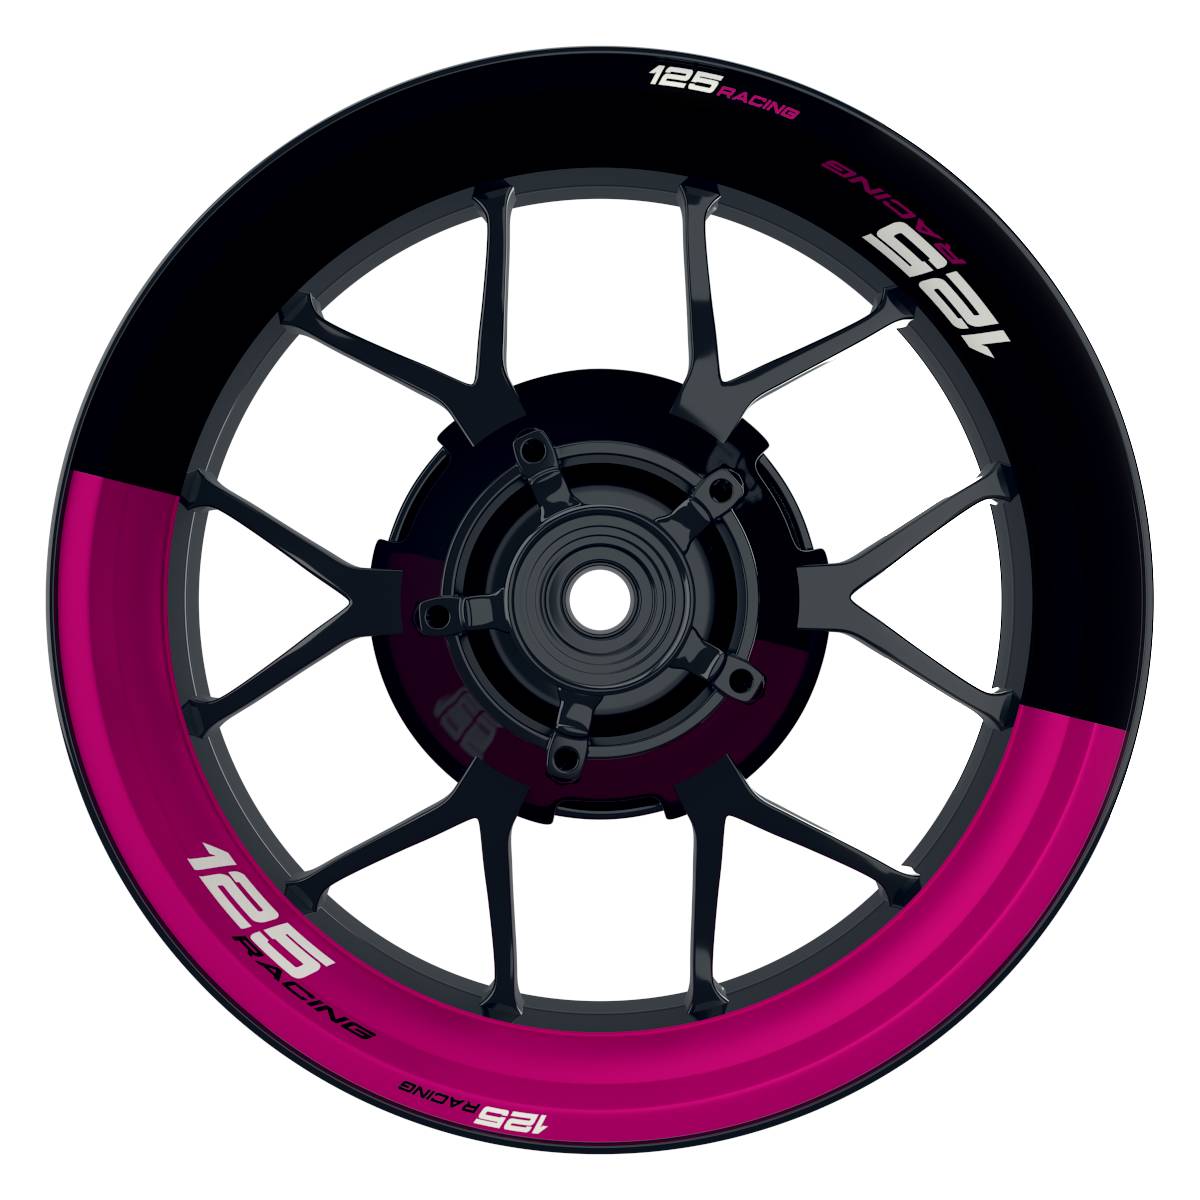 KTM 125RACING Halb halb schwarz pink Wheelsticker Felgenaufkleber